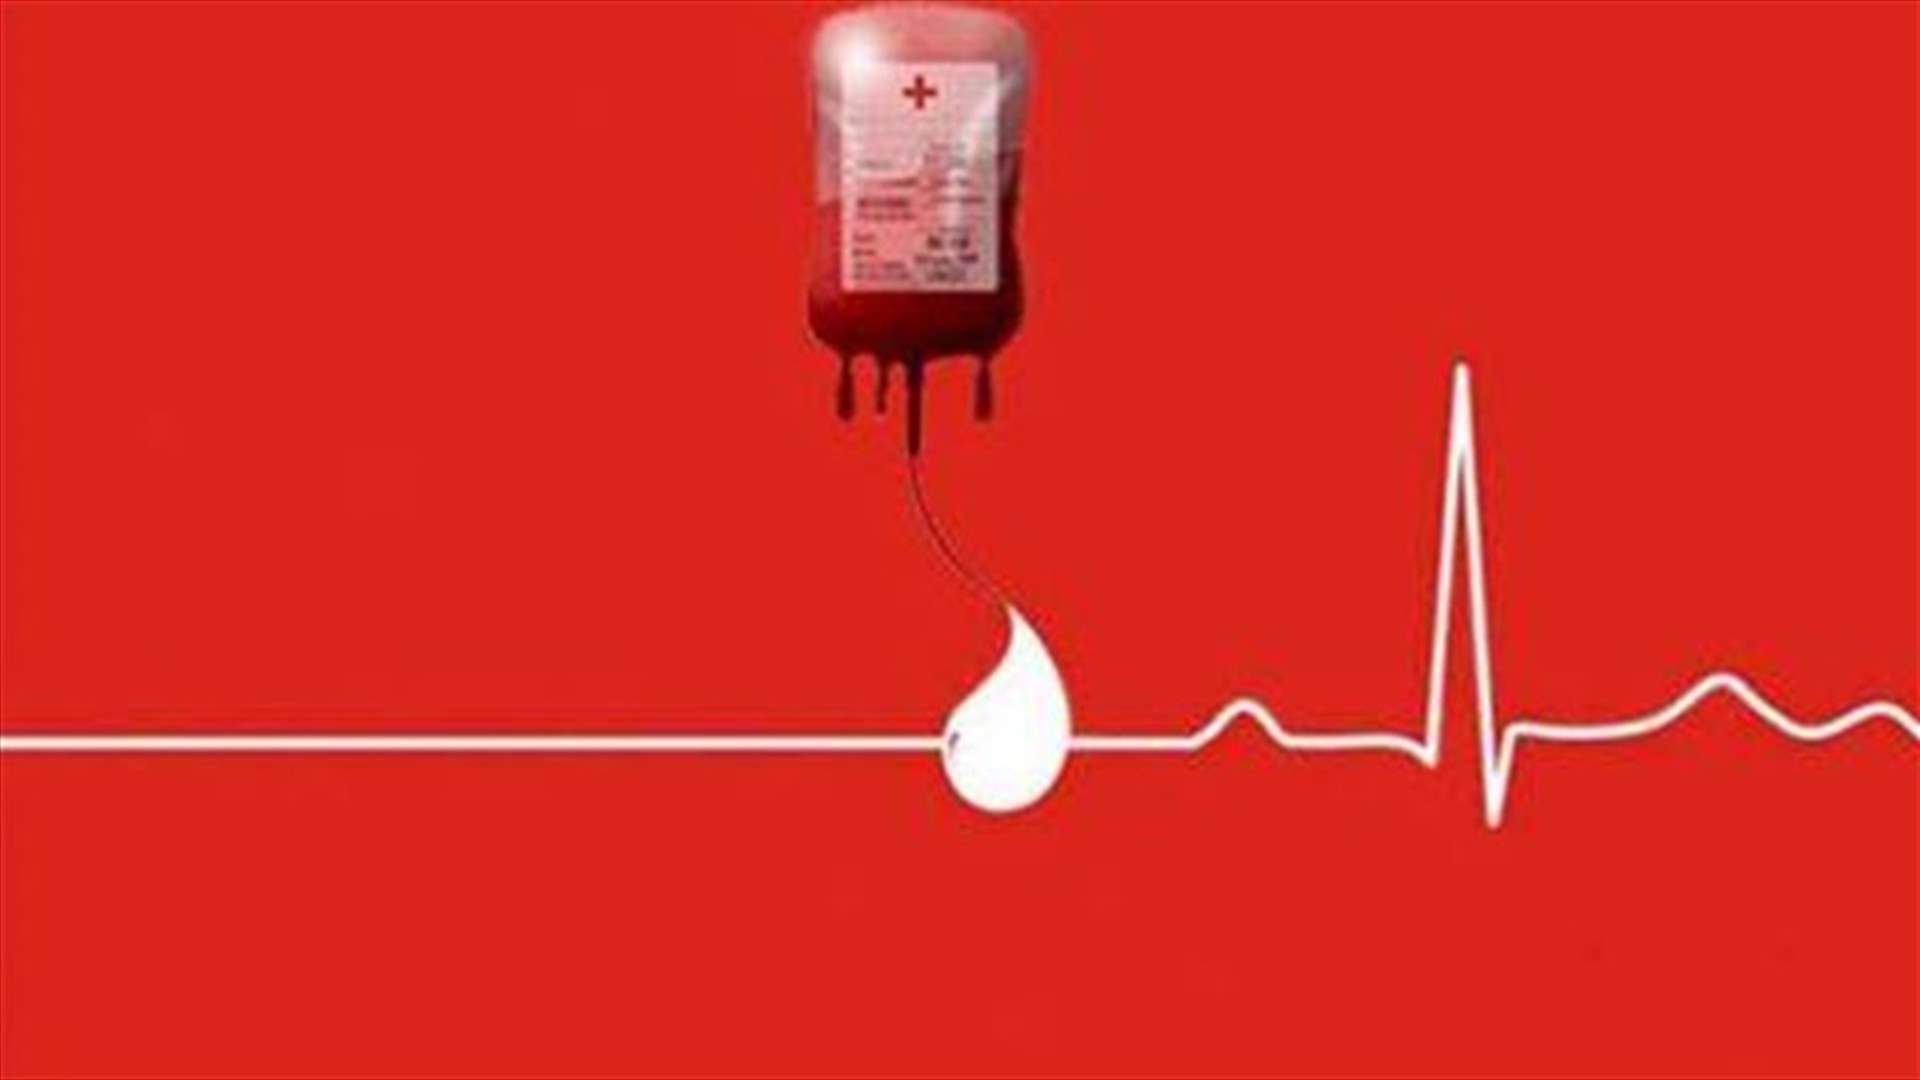 مريضة في مستشفى أوتيل ديو بحاجة ماسة الى 12 وحدة دم من فئة B+ يومي 21 و 22 شباط للتبرع الاتصال على الرقم: 03/380423